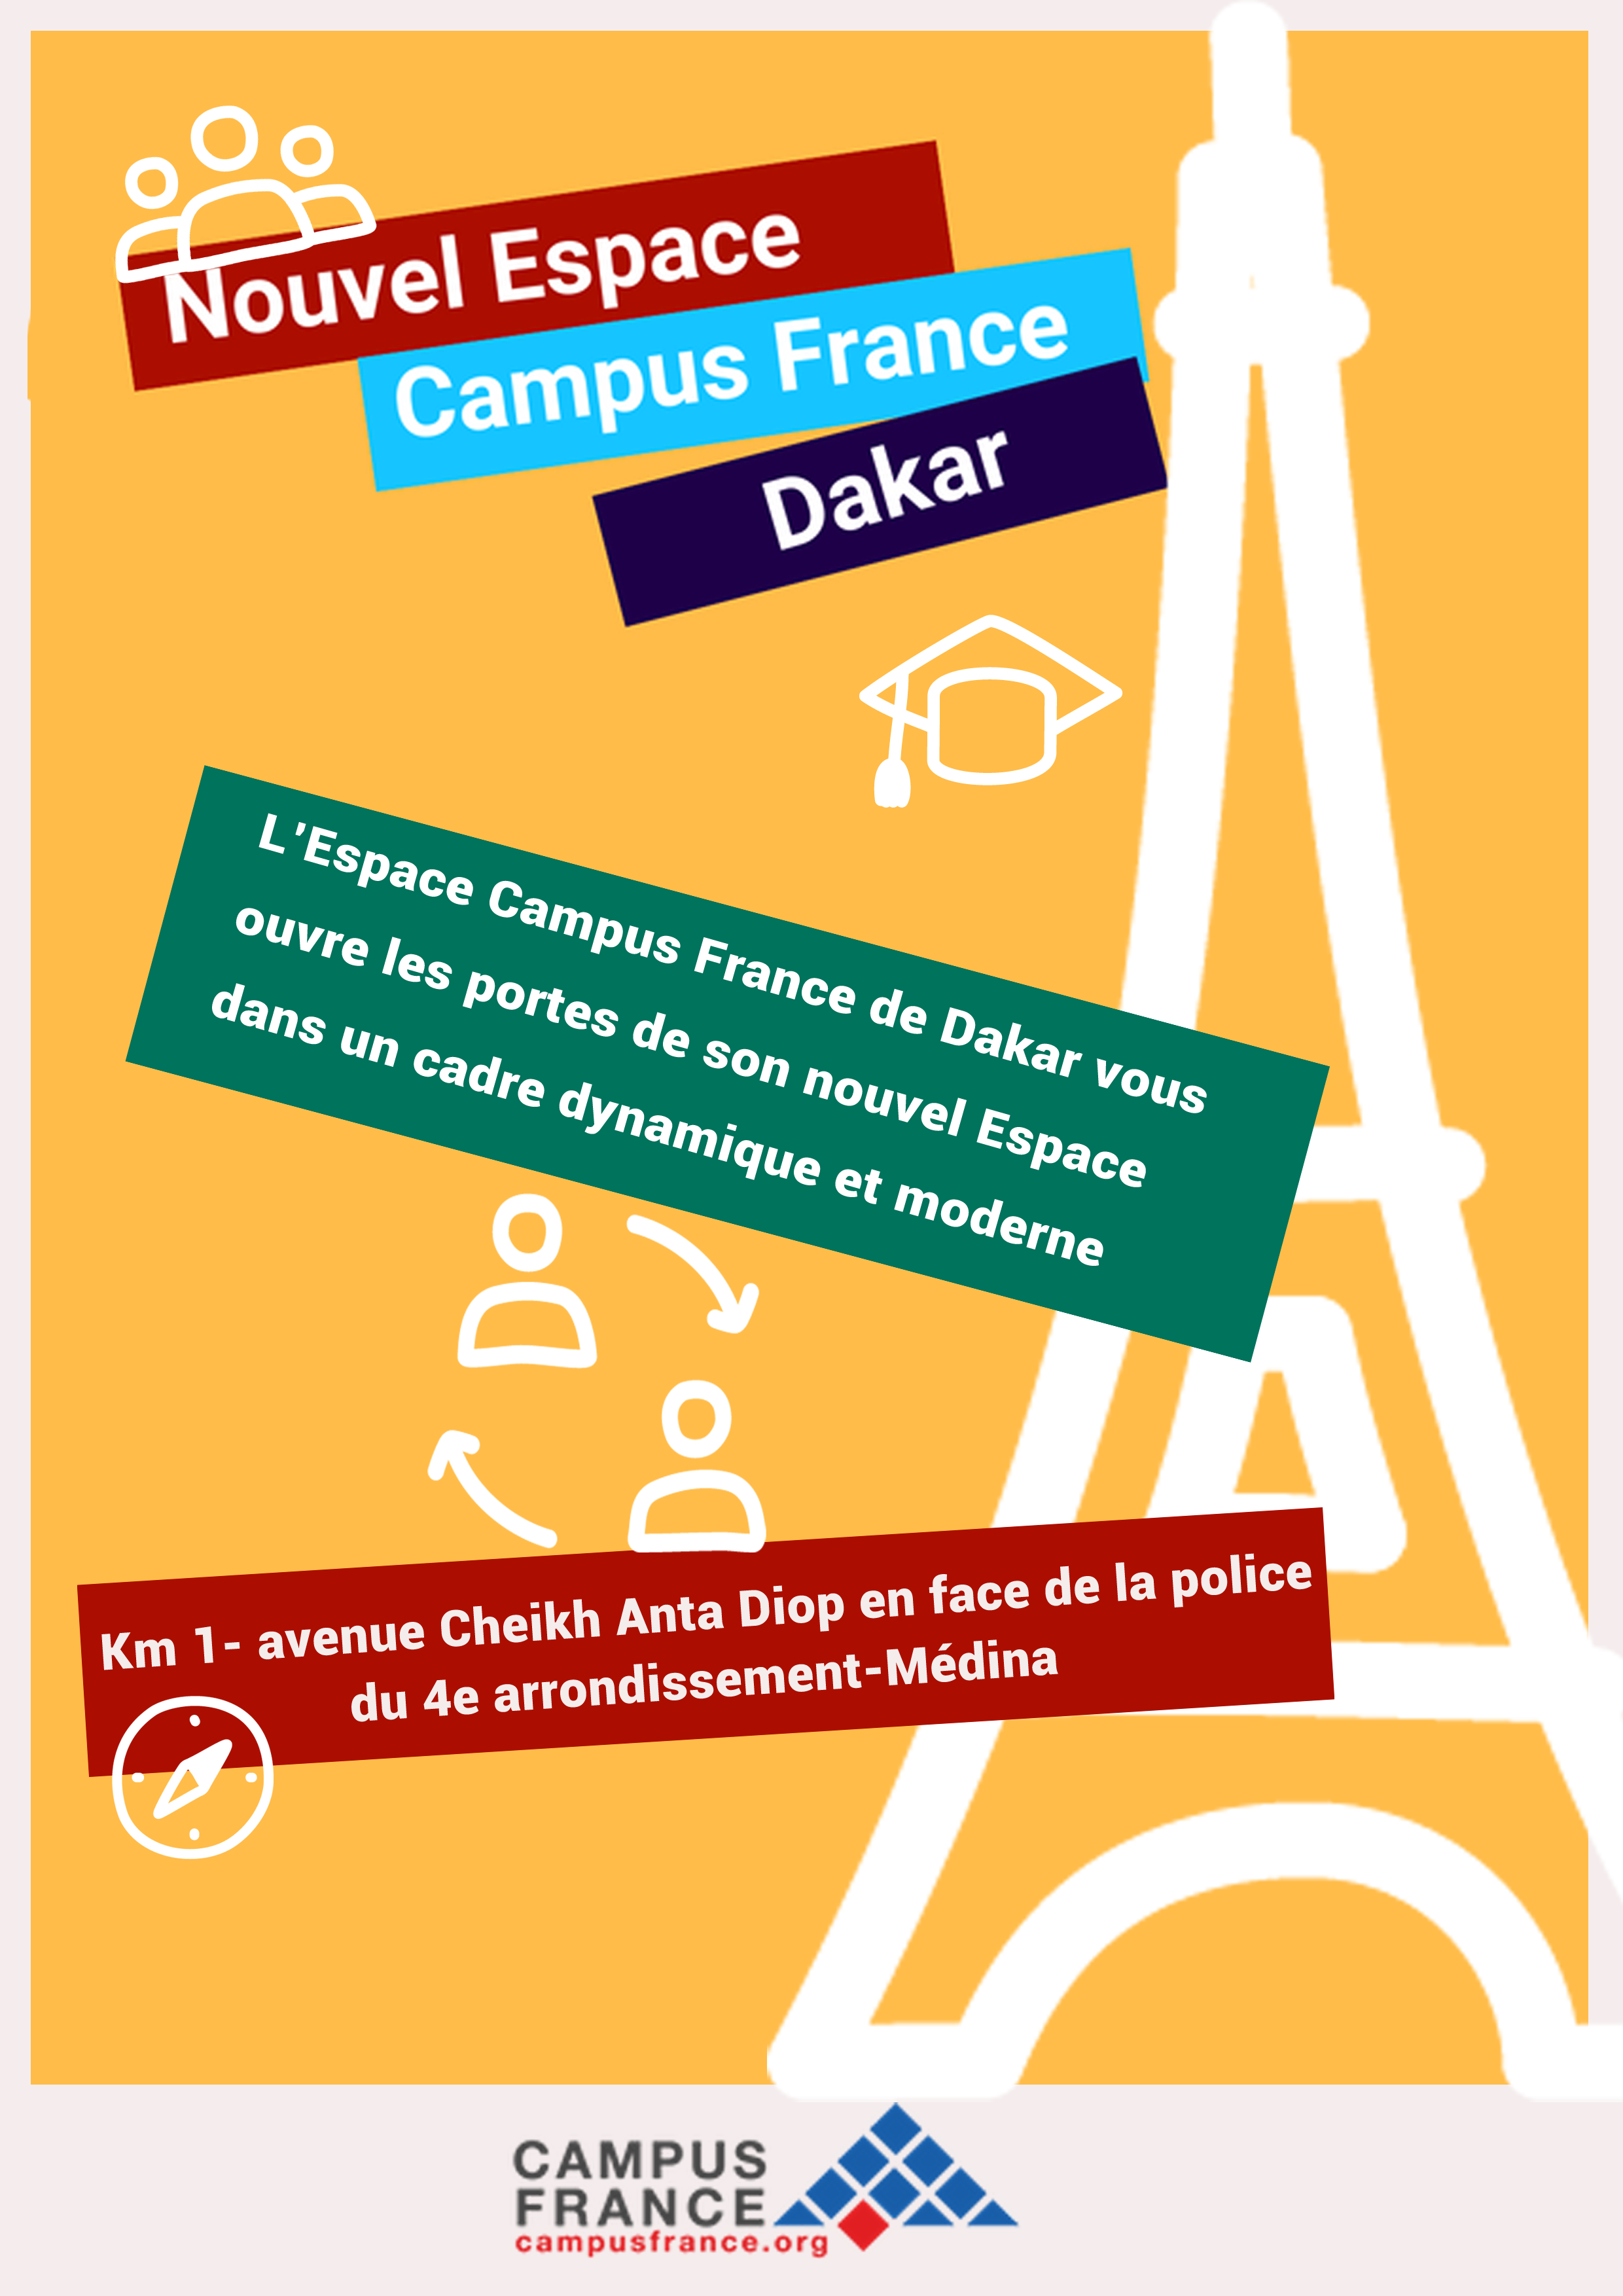 Nouvel Espace Campus France de Dakar  Campus France